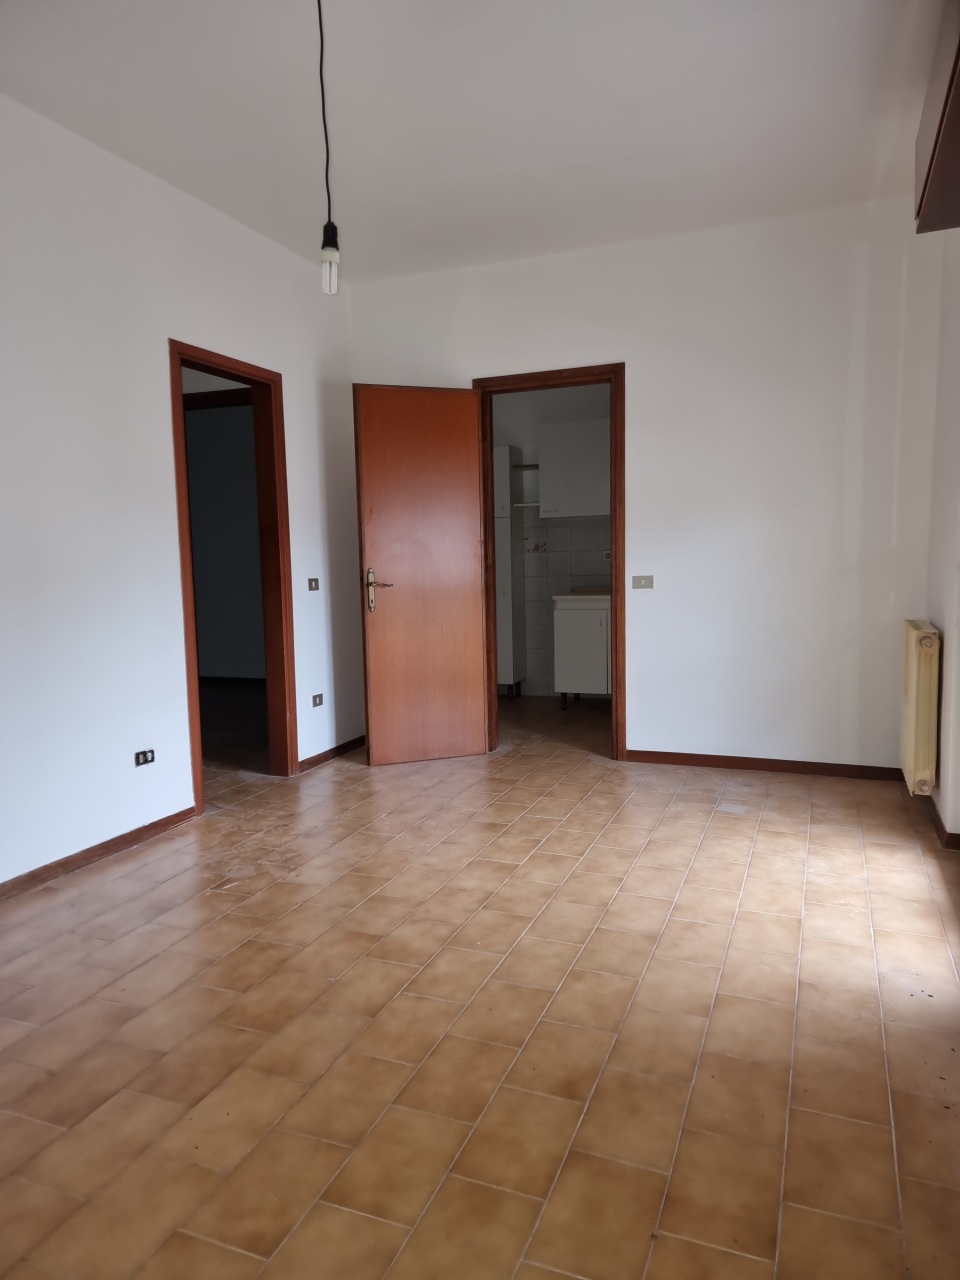 Appartamento in vendita a Viareggio, 4 locali, prezzo € 140.000 | PortaleAgenzieImmobiliari.it